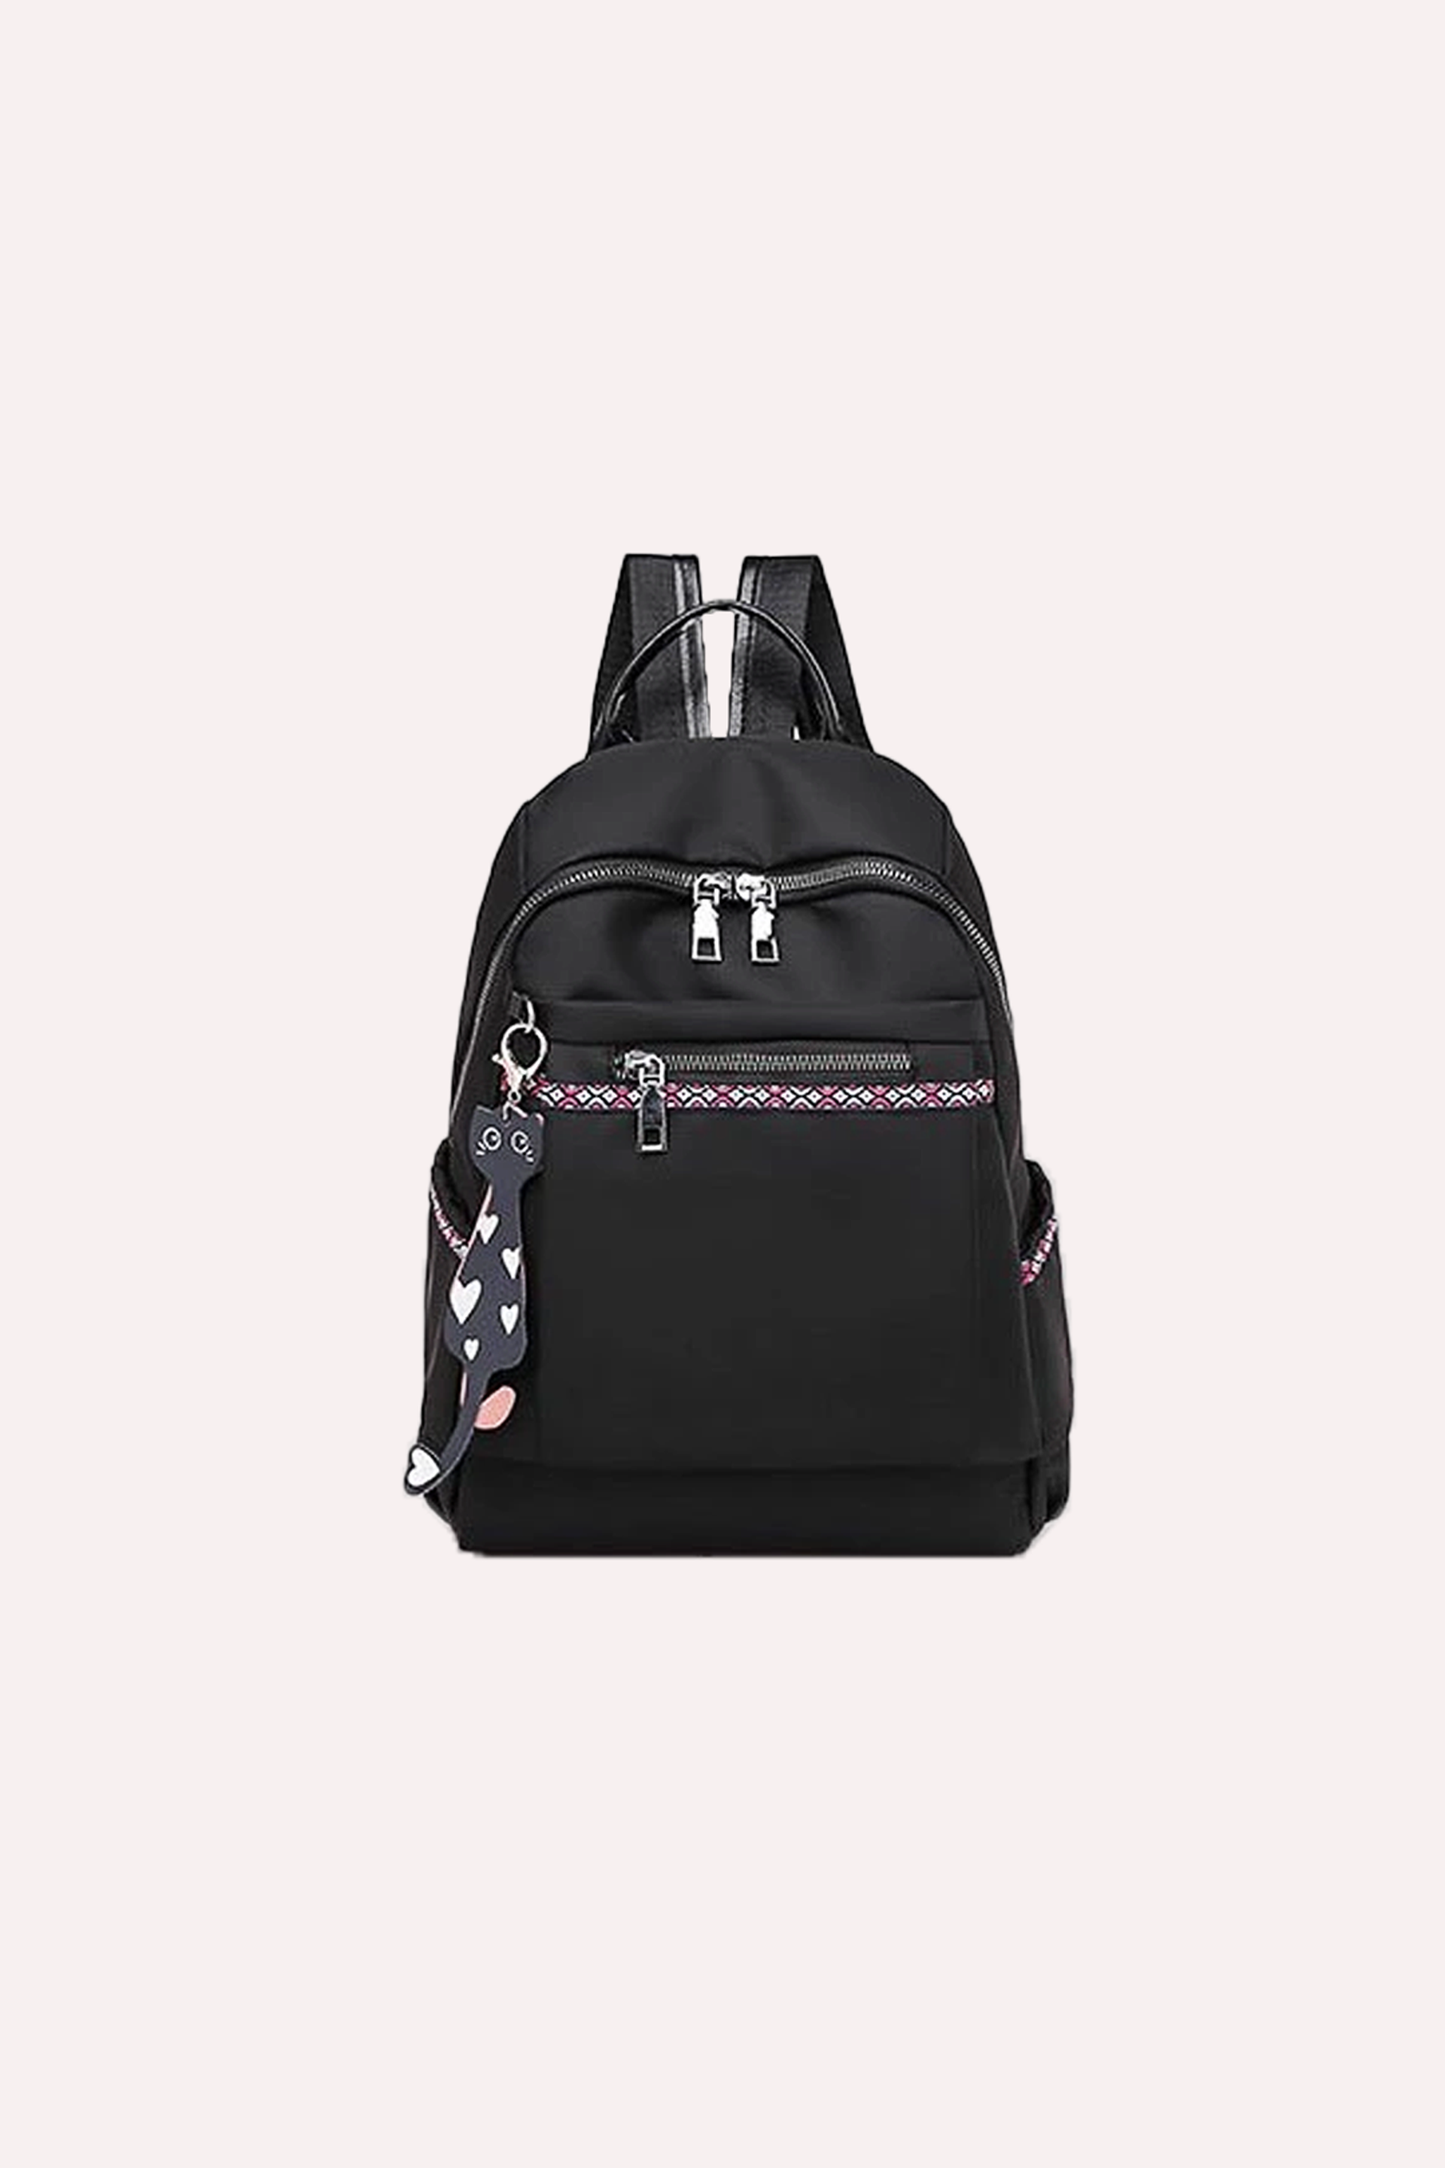 Everest - Lightweight Backpacks for Girls